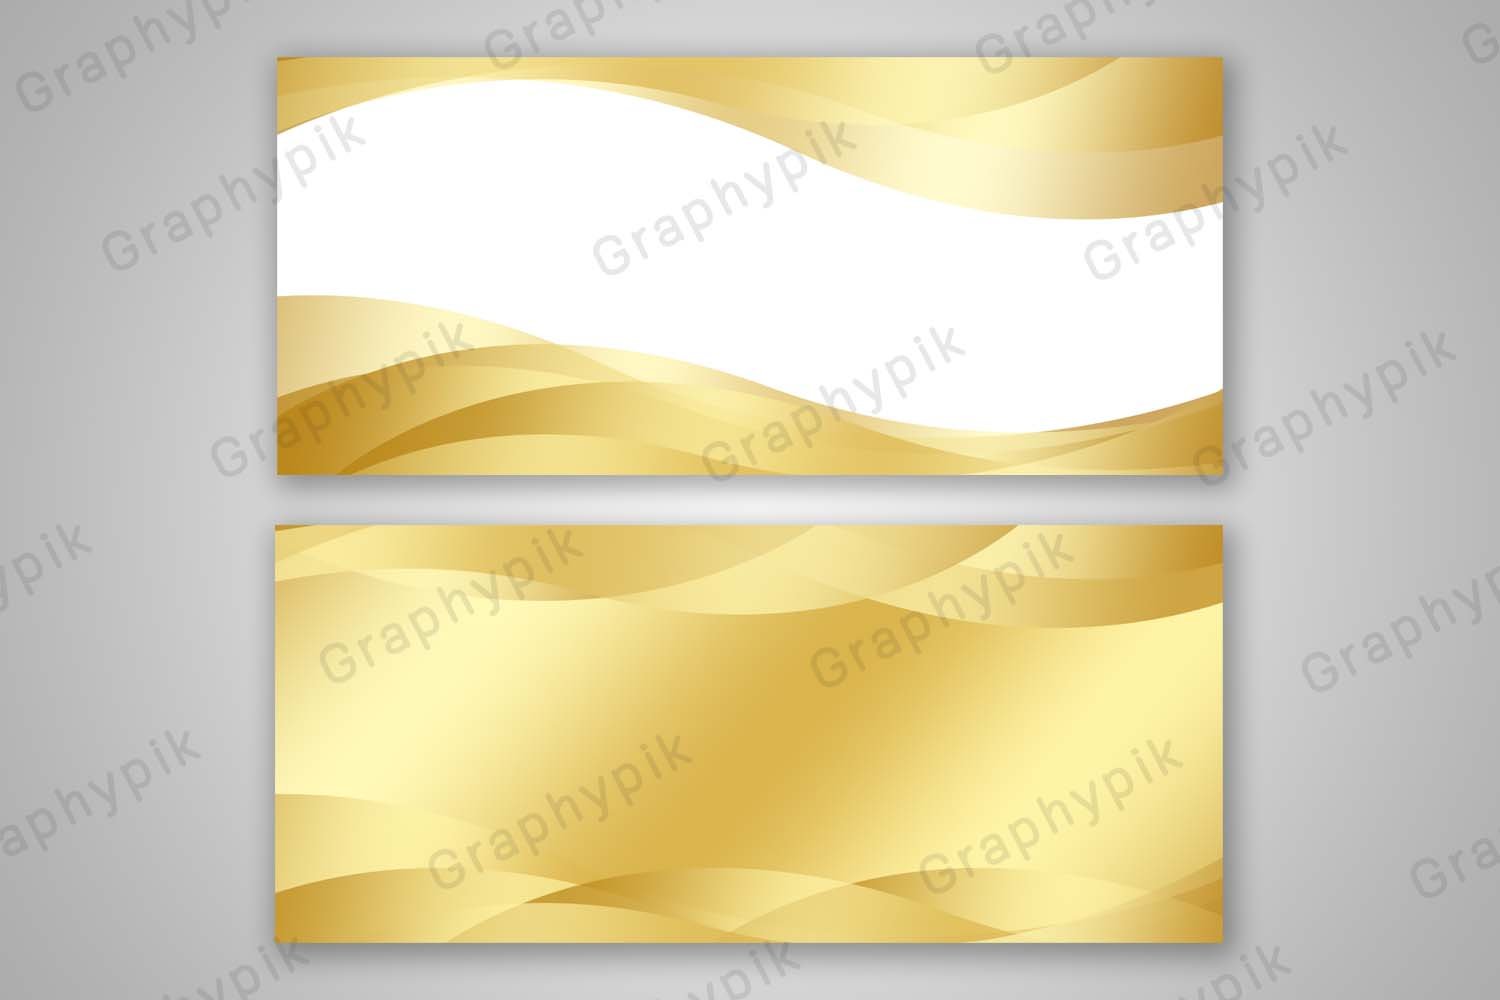 พื้นหลังสีทองแพ็คคู่ พร้อมพื้นที่วางข้อความ | Graphypik